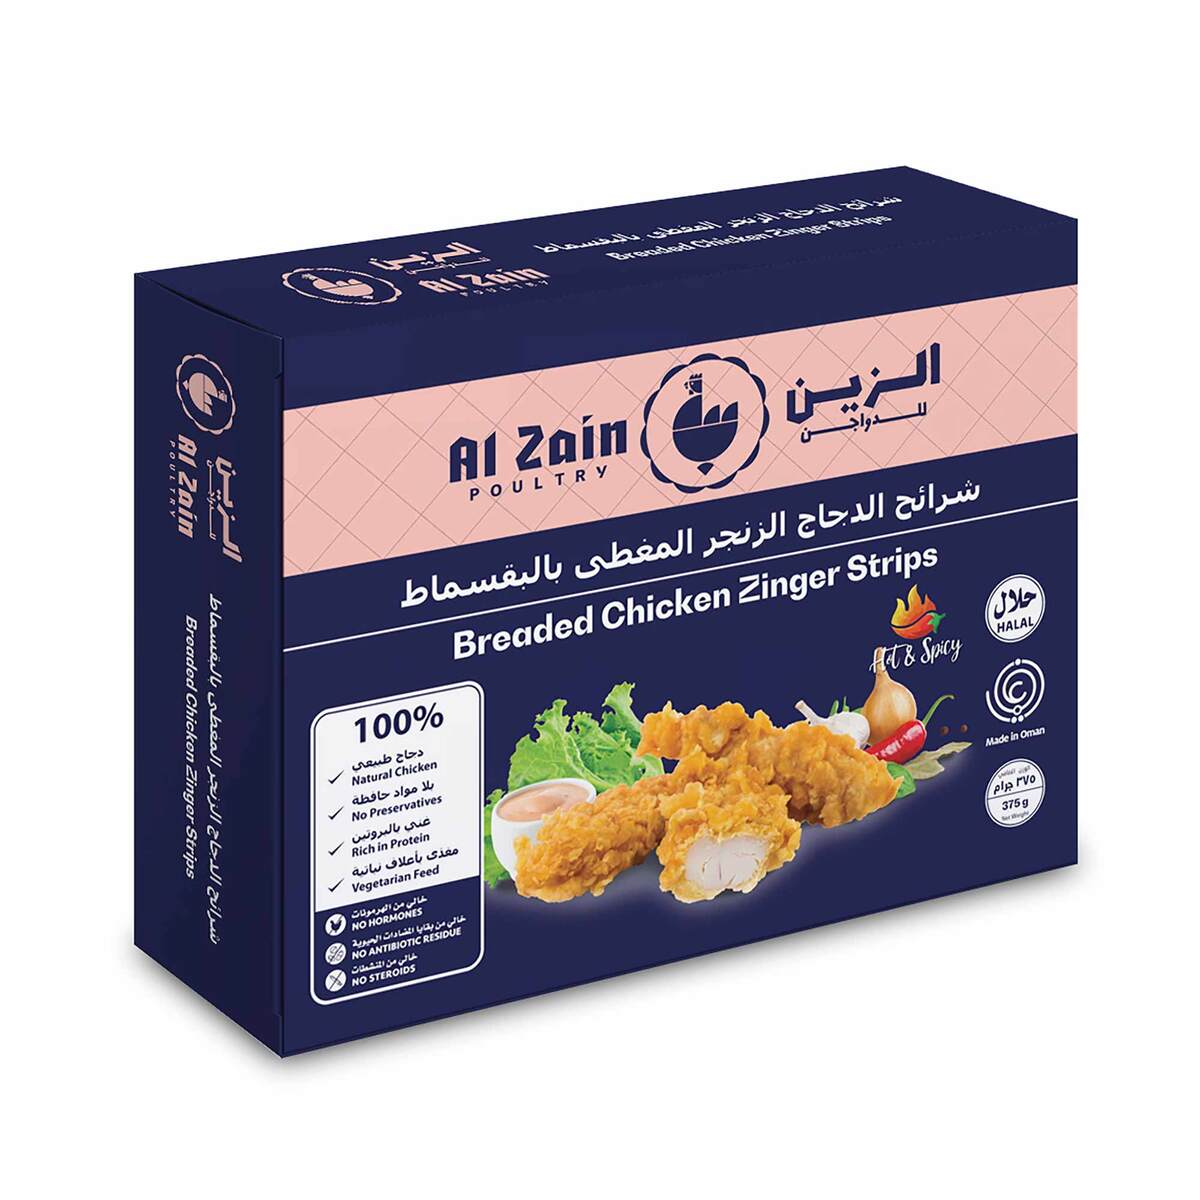 Al Zain Breaded Chicken Zinger Strips 2 x 375 g